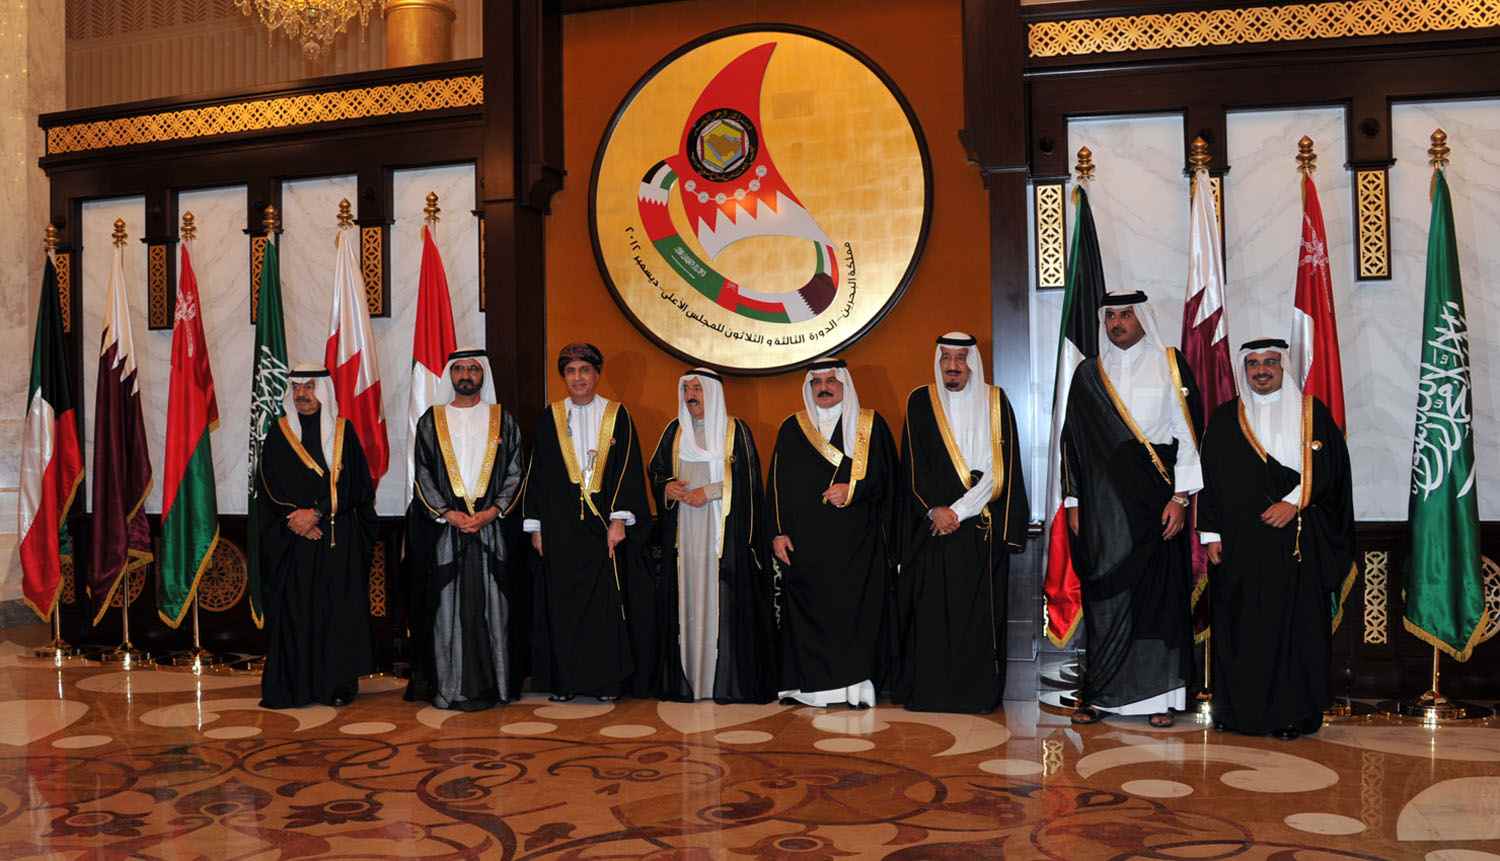  مصر والسعودية والبحرين ودولة الامارات تقطع اليوم علاقاتها الدبلوماسية مع قطر وتقرر محاصرتها حد خنقها